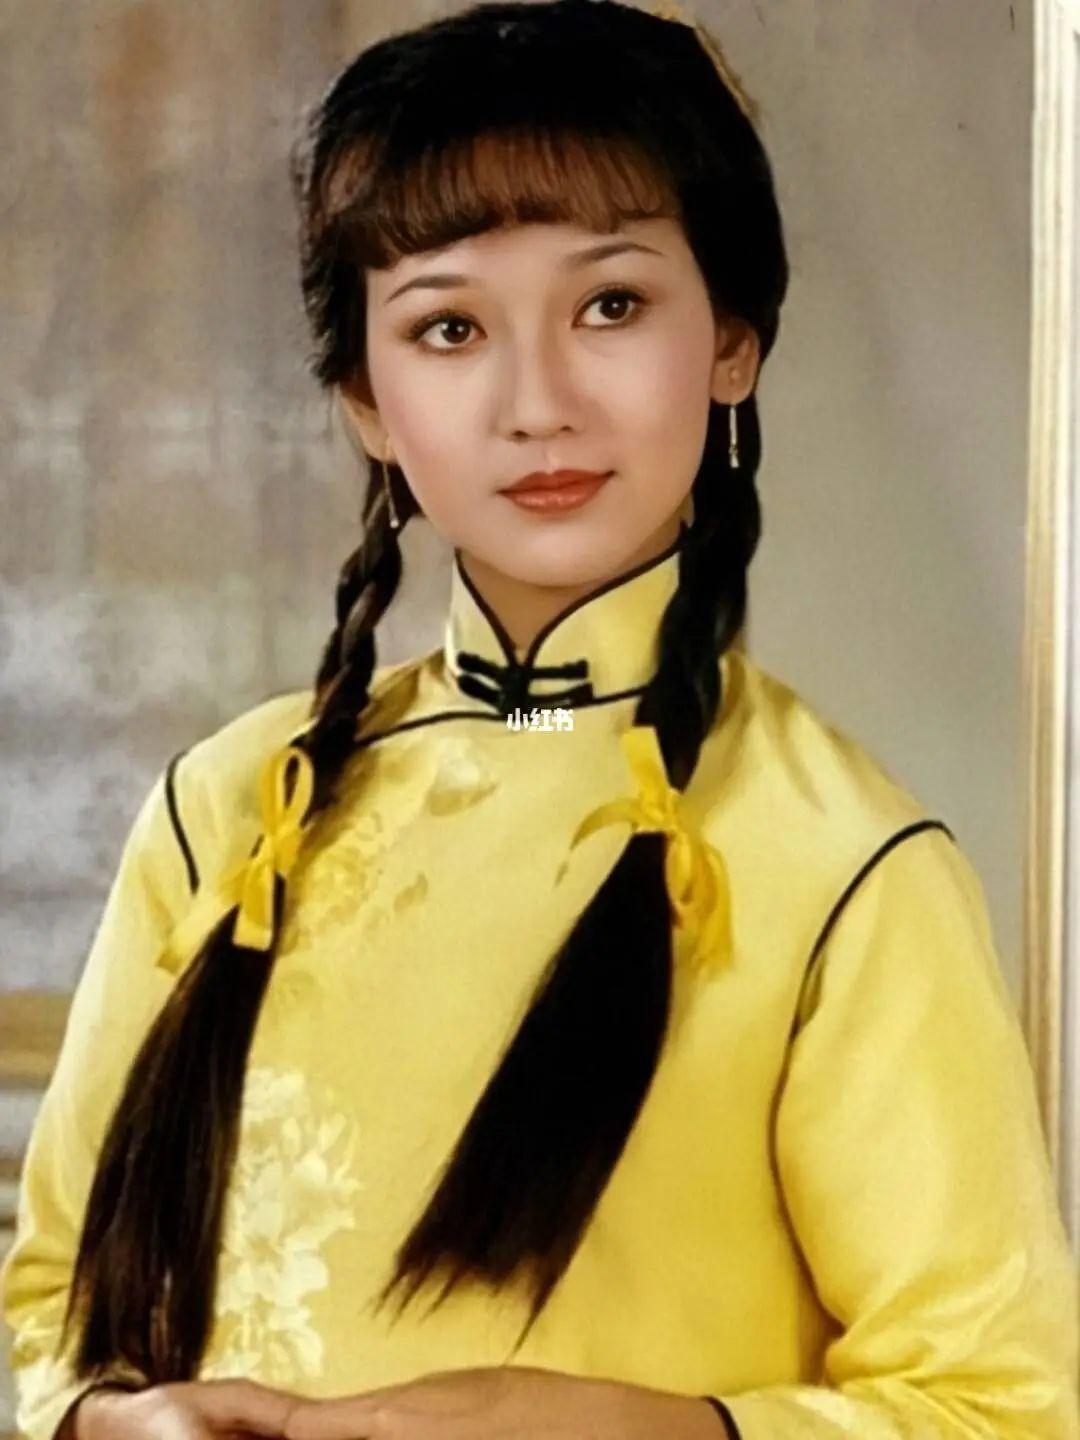 赵雅芝,1953年出生于香港九龙,在19岁的时候就拿下了香港小姐第四名